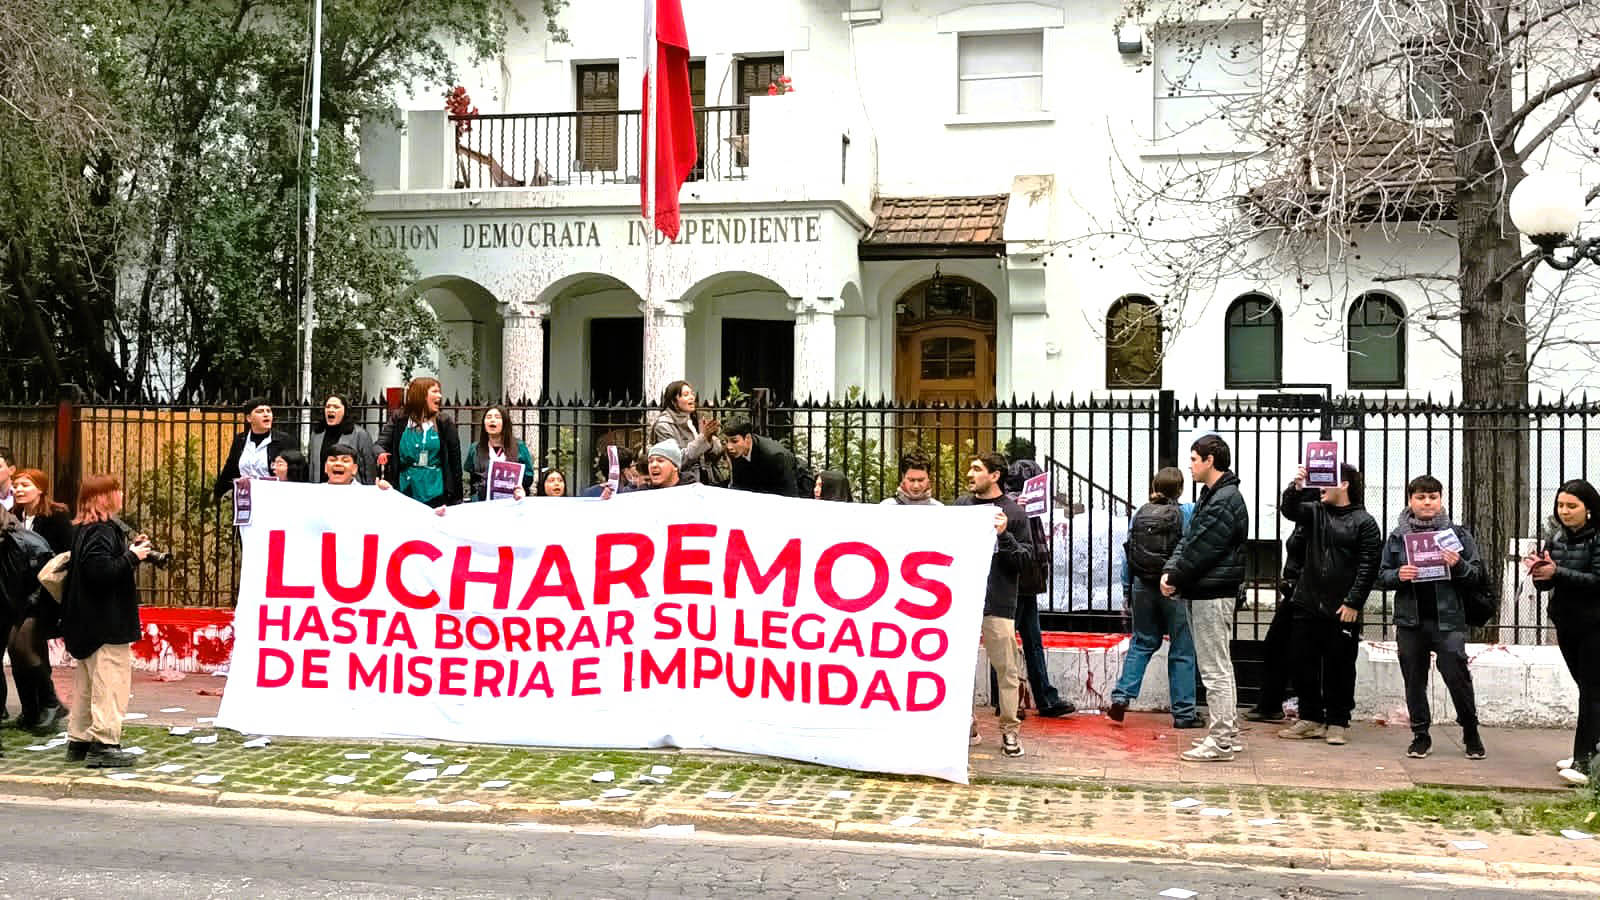 Chile. Estudiantes son duramente reprimidos por protestar en sede pinochetista: “Lucharemos hasta borrar su legado de miseria e impunidad”